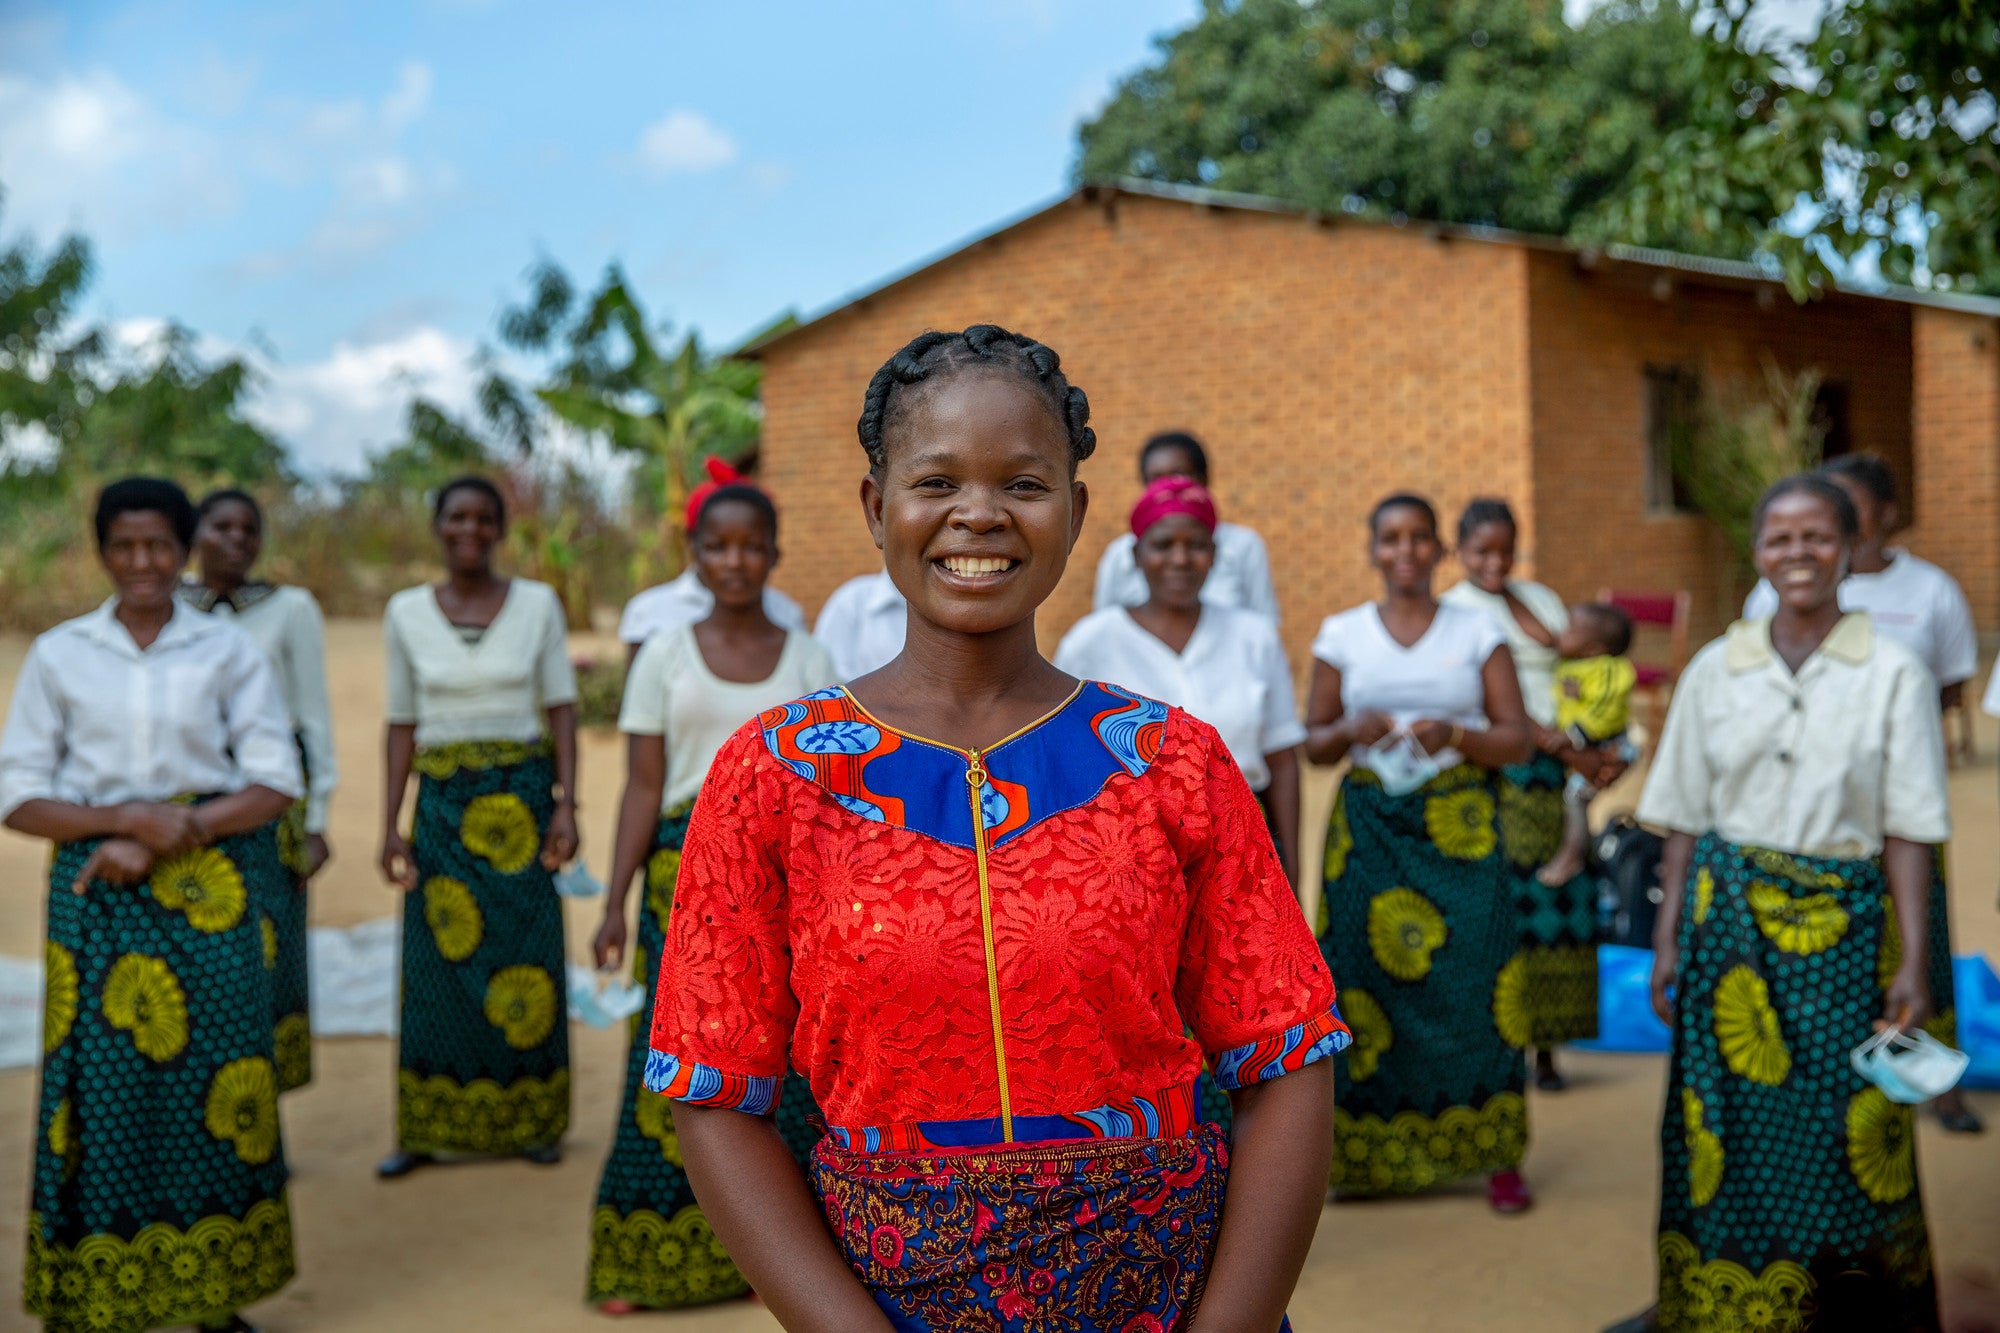 Une femme malawite portant une chemise rouge vif sourit au centre de la photo. Derrière elle, un groupe de femmes vêtues de jupes à motifs assorties et de chemises blanches se tiennent en demi-cercle.